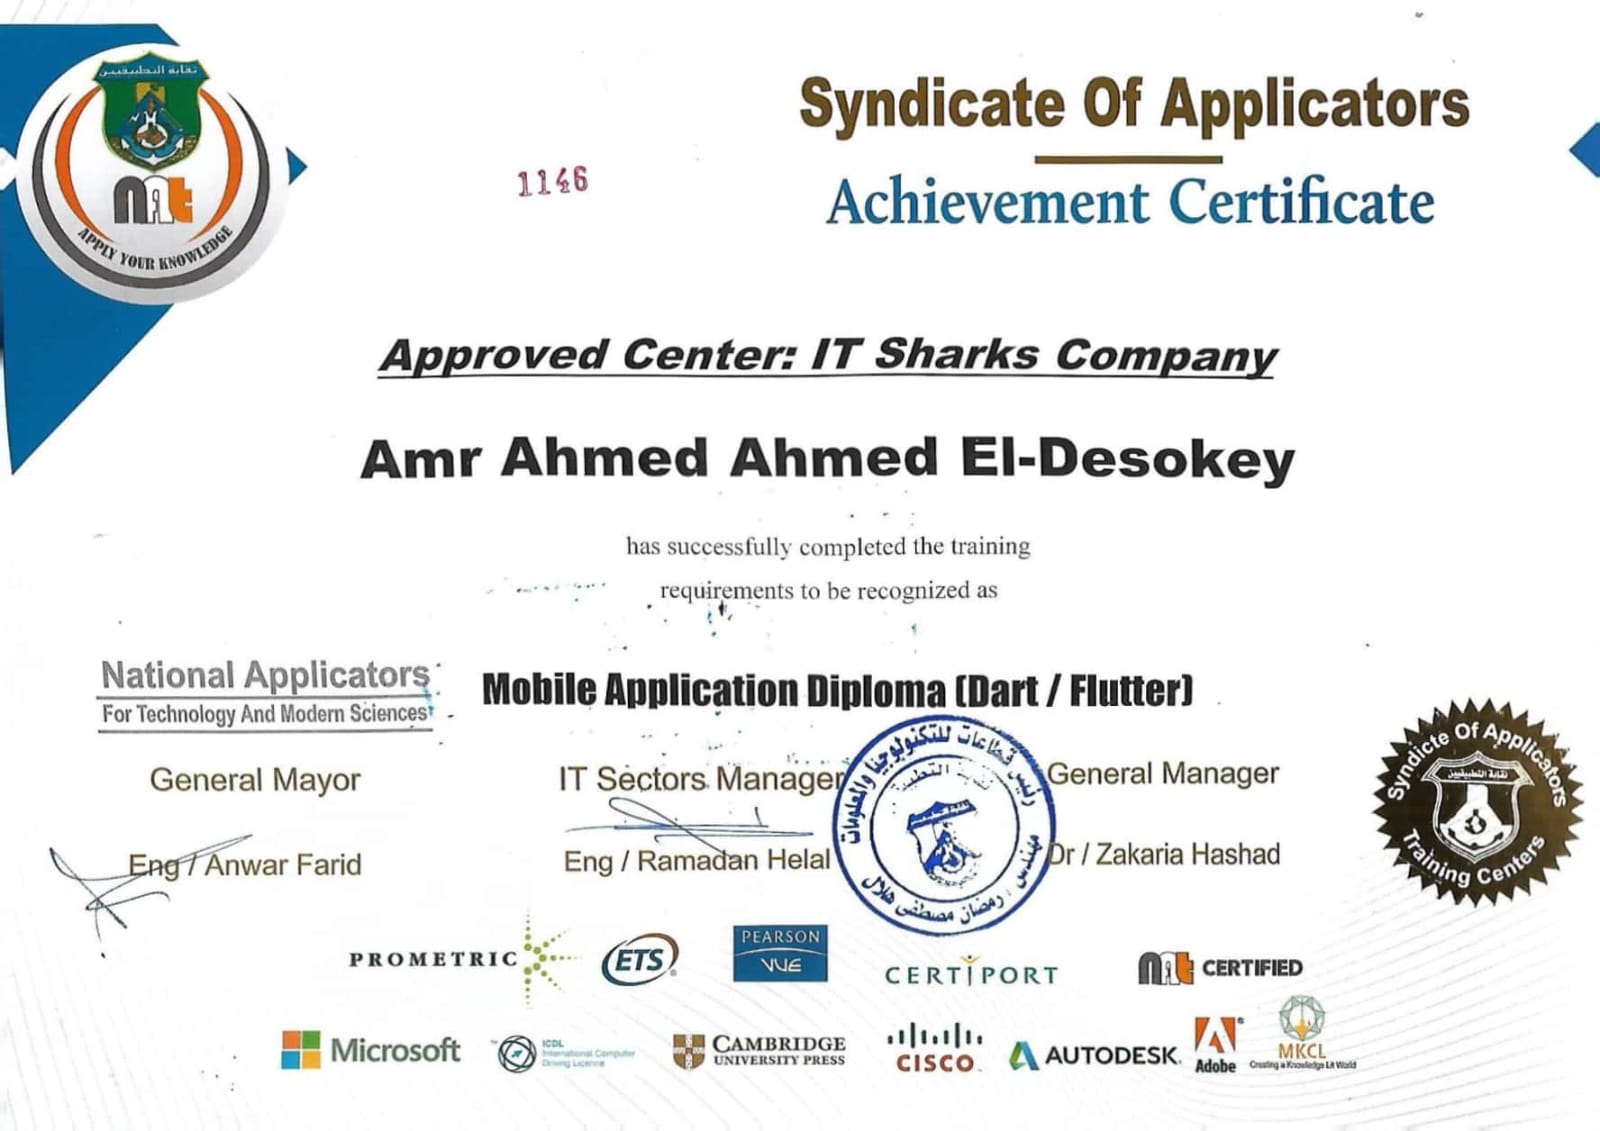 Mobile Application Diploma (Dart / Flutter )